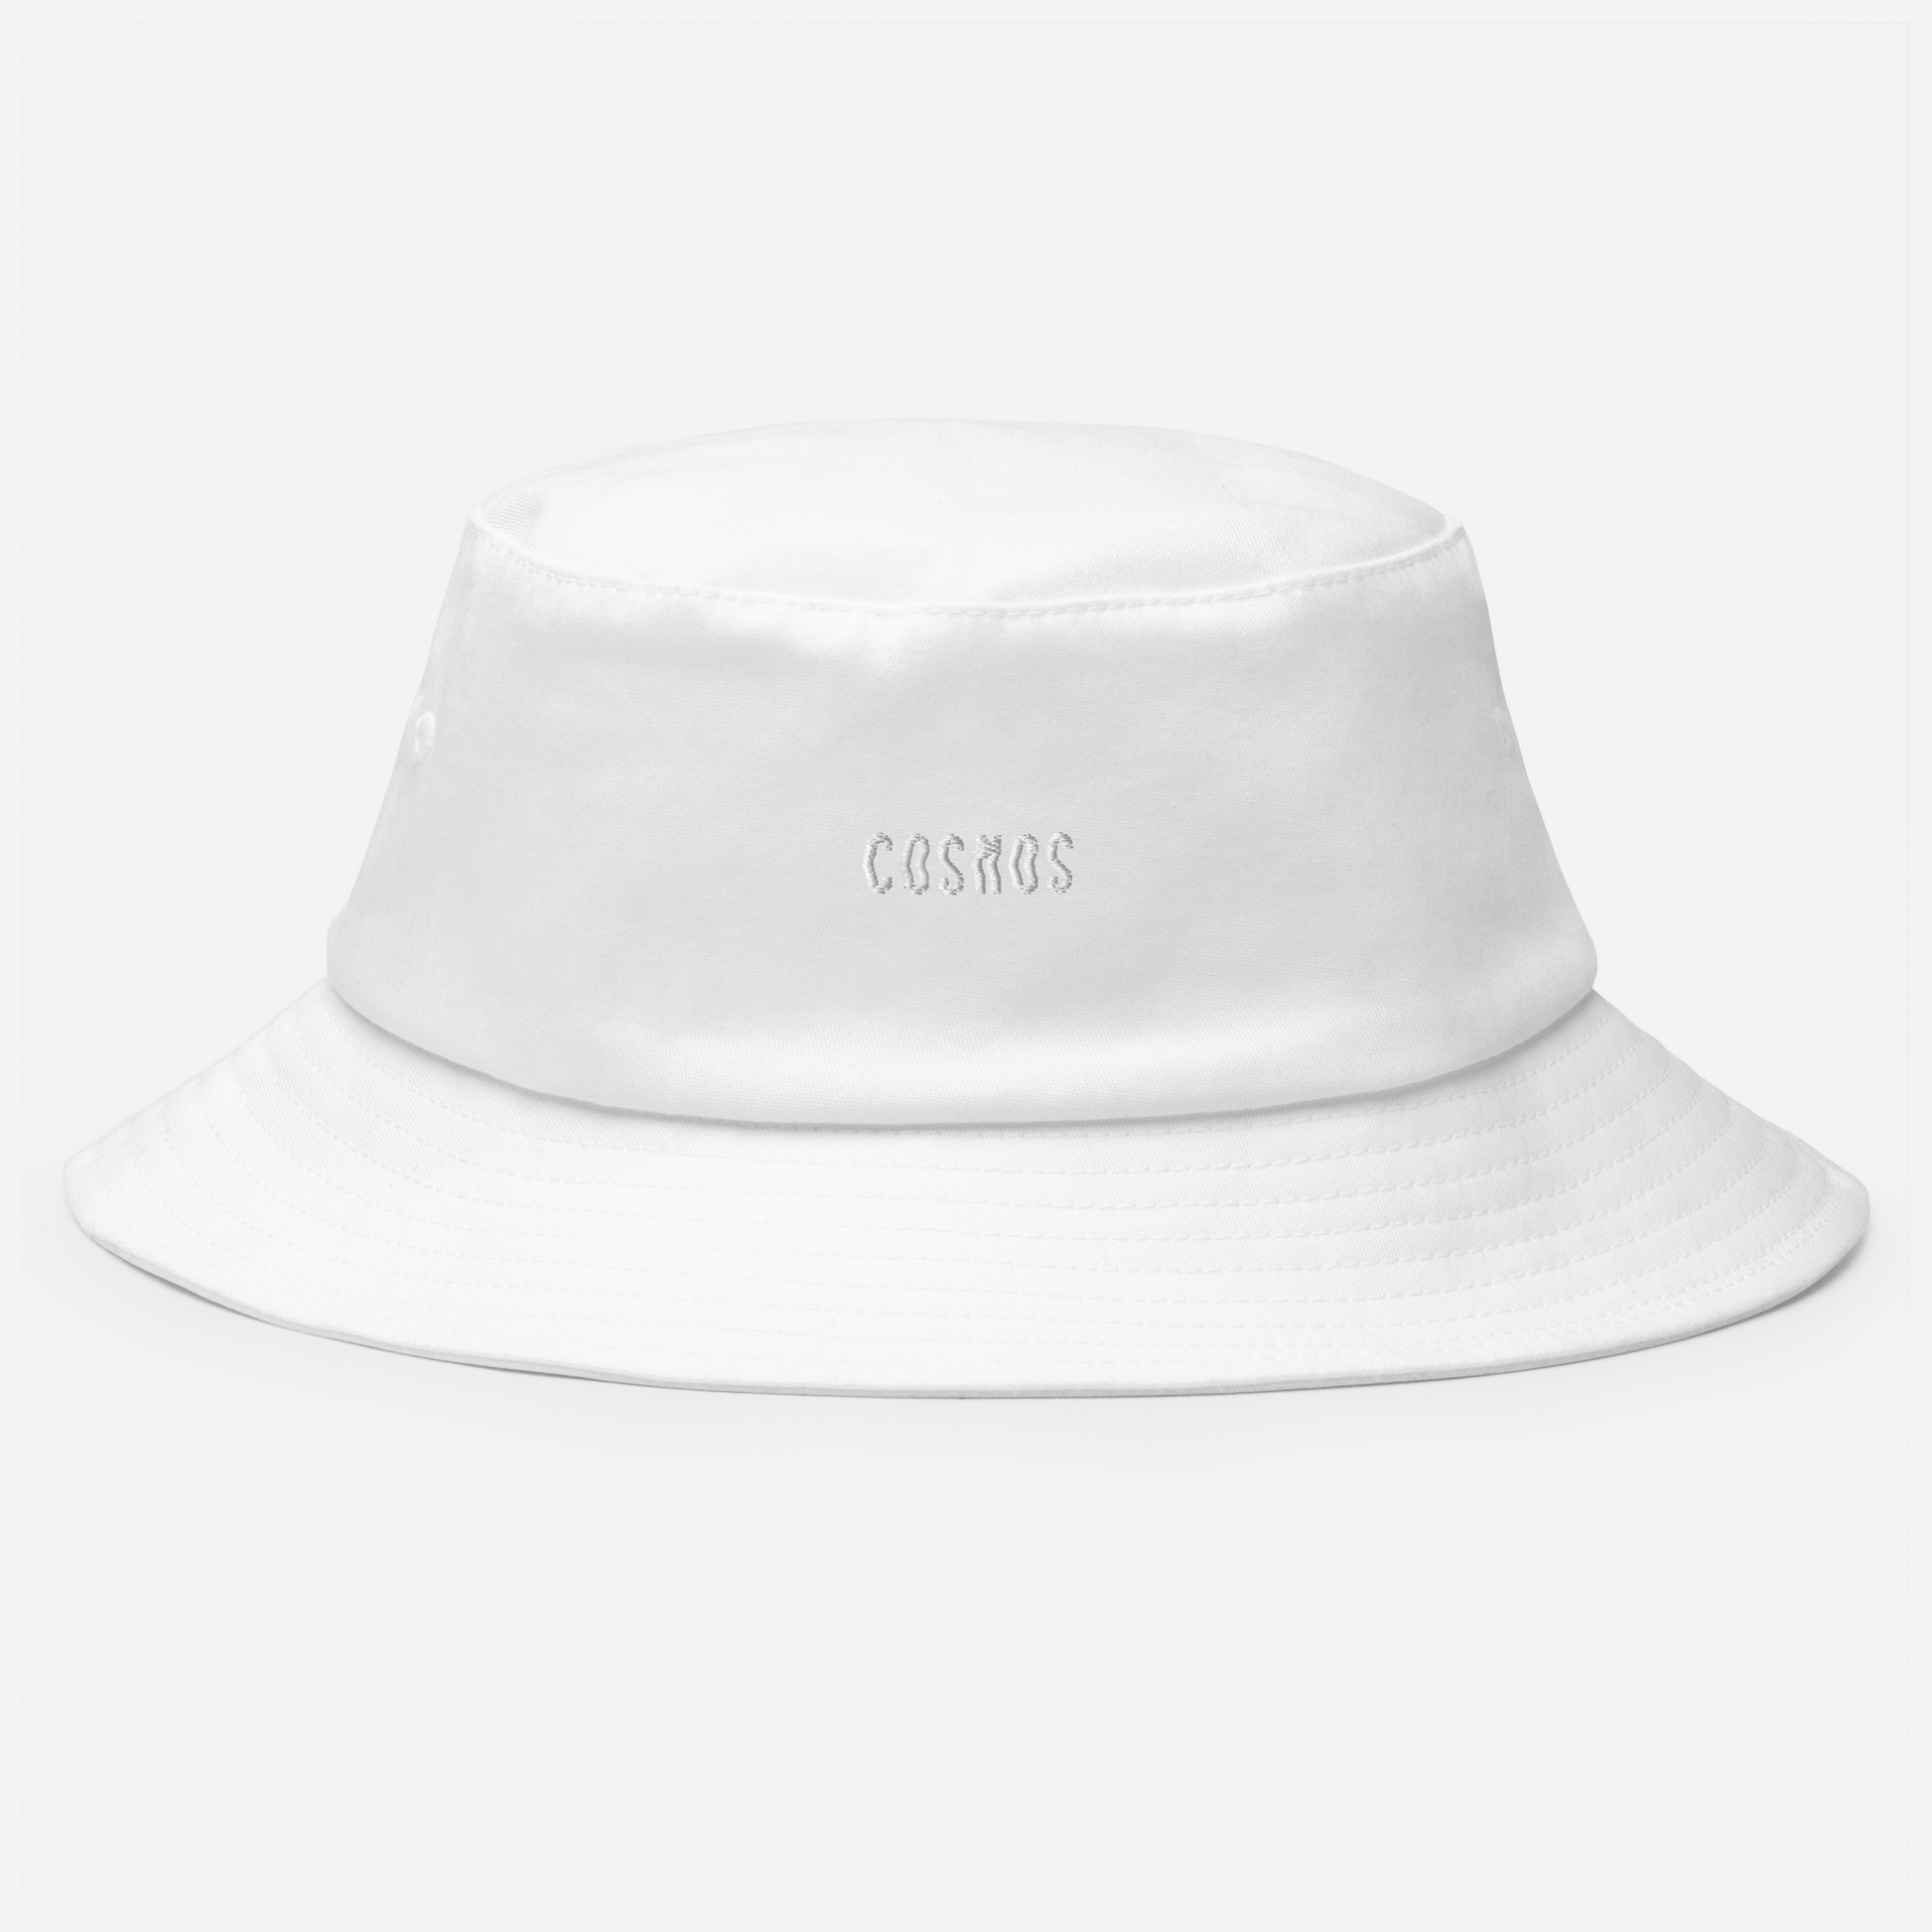 Cosmos x White Bucket Hat | Luxury Streetwear | AETERIUS